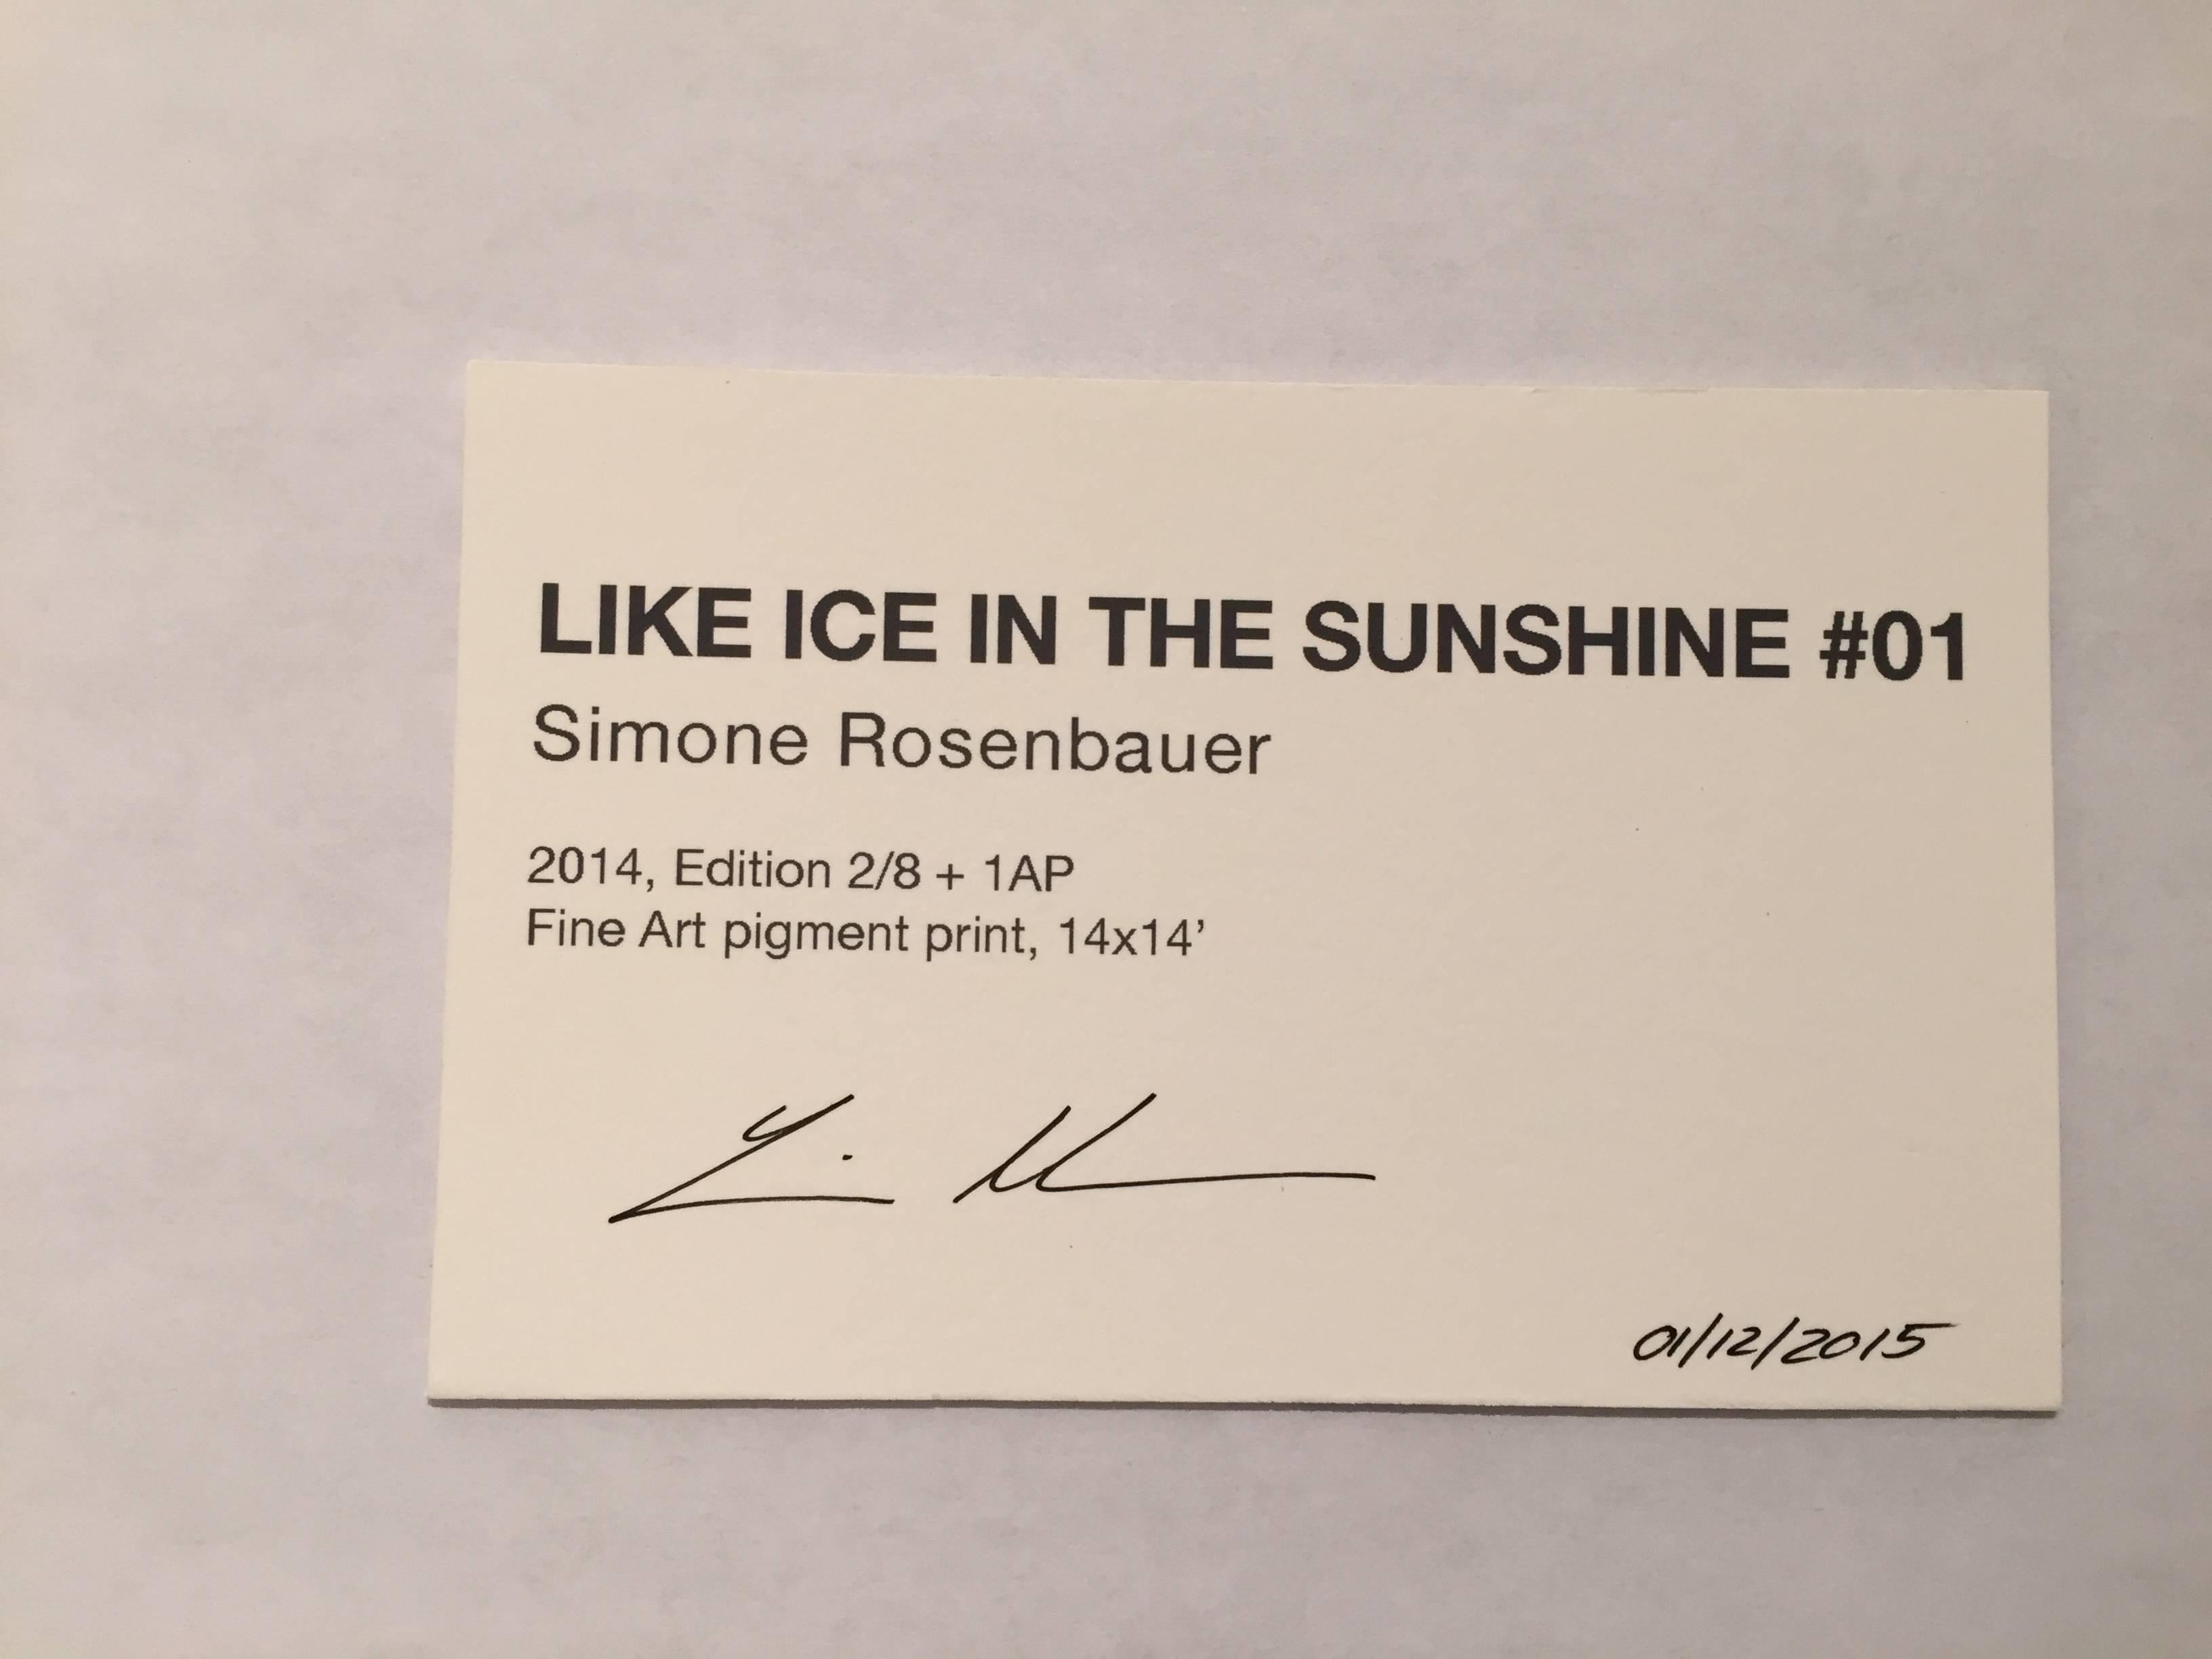 Comme de la glace dans le soleil n° 01 - Photograph de Simone Rosenbauer